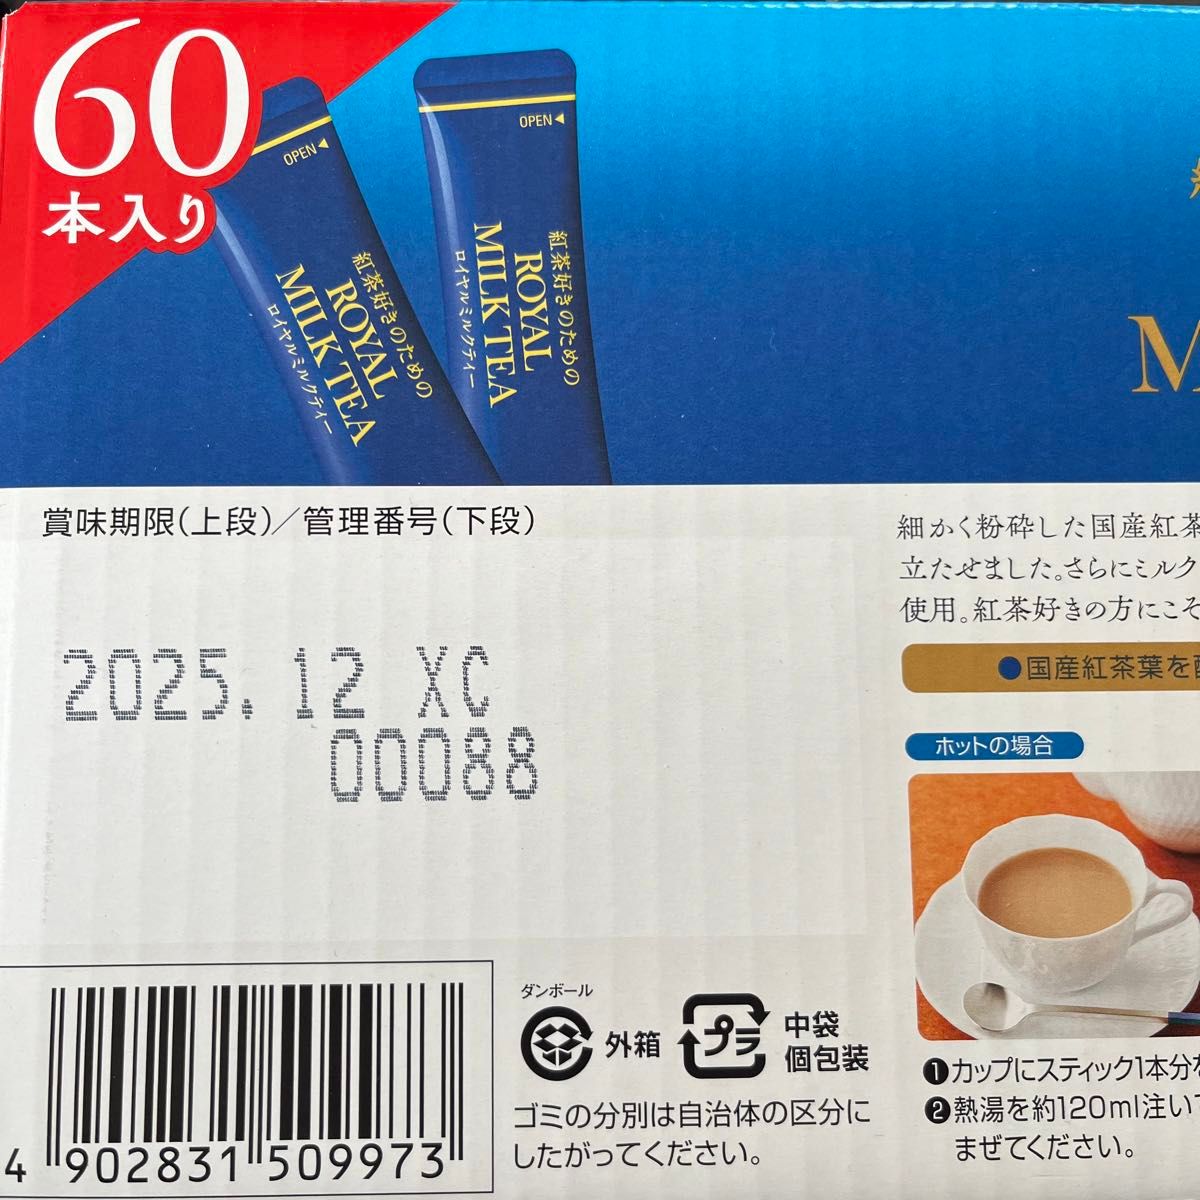 日東紅茶 ロイヤルミルクティー 60本入り